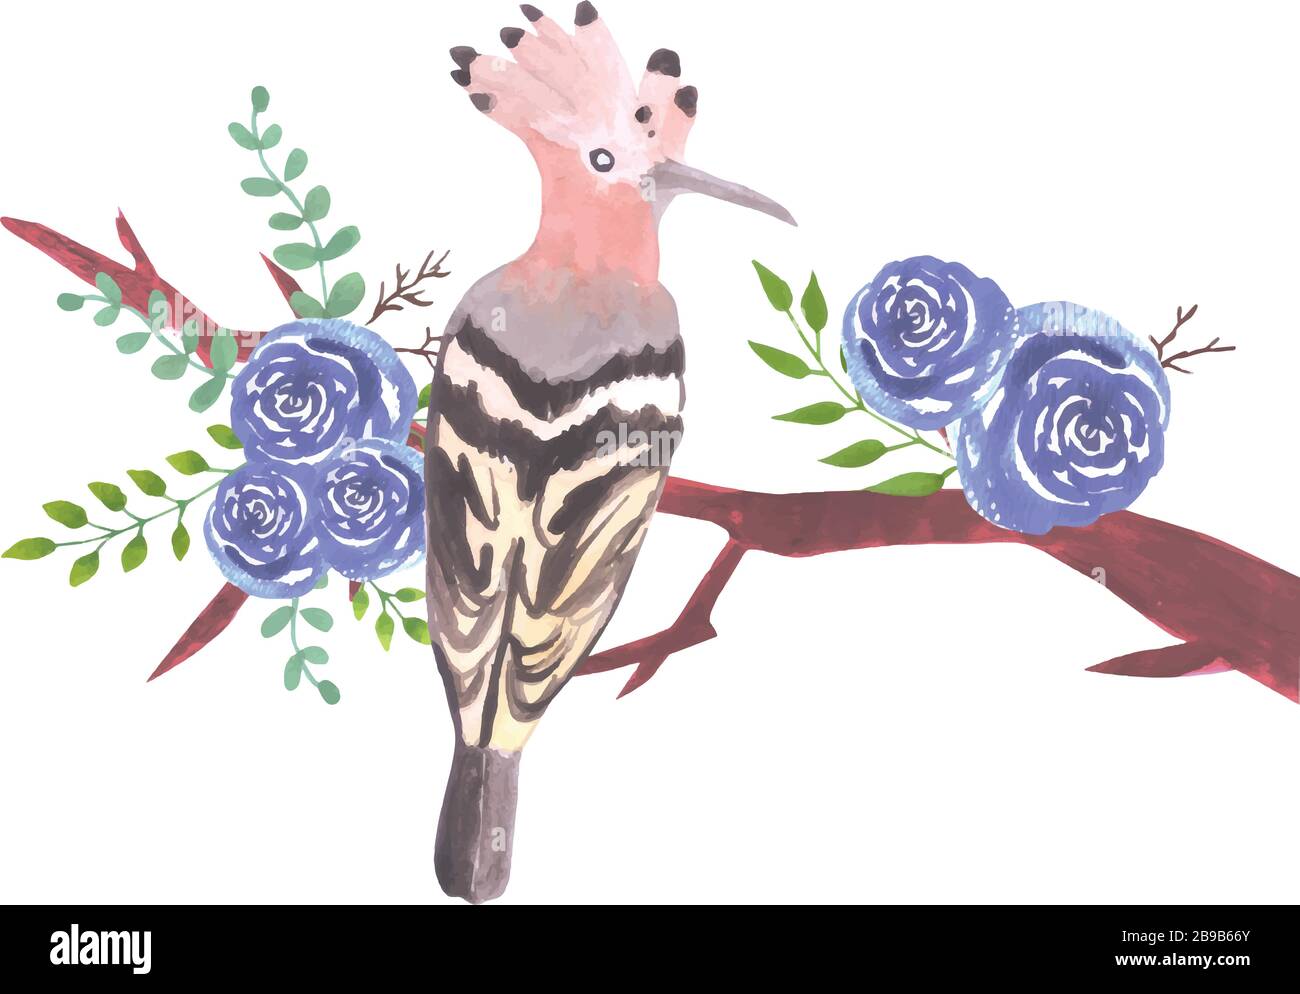 Oiseau Hoopoe sur une branche florale avec des roses bleues et des feuilles de peinture aquarelle Illustration de Vecteur